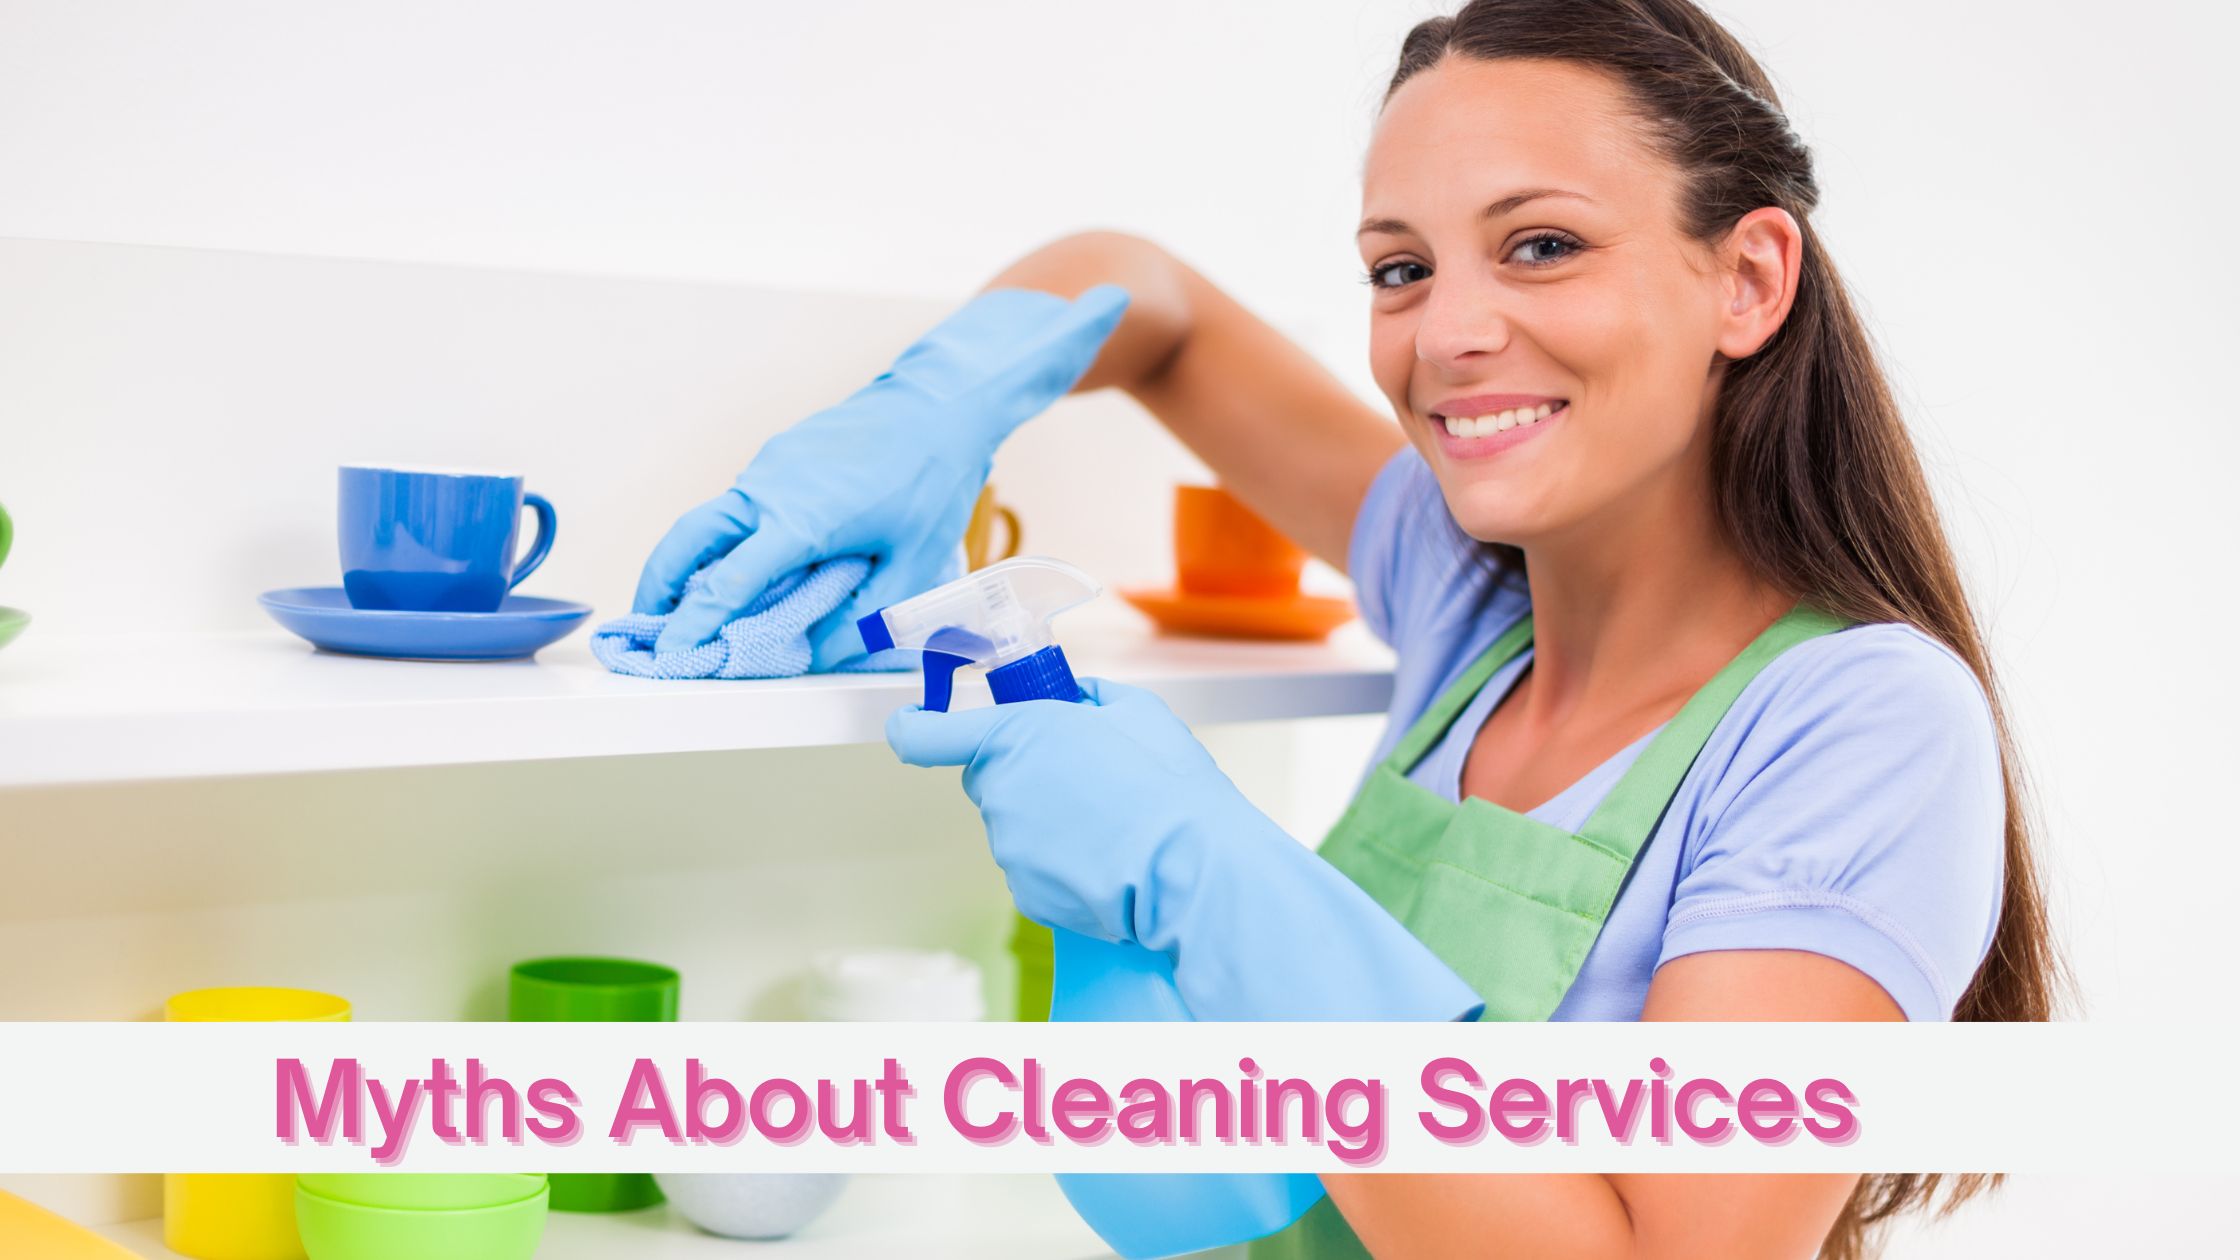 Equívocos sobre serviços de limpeza